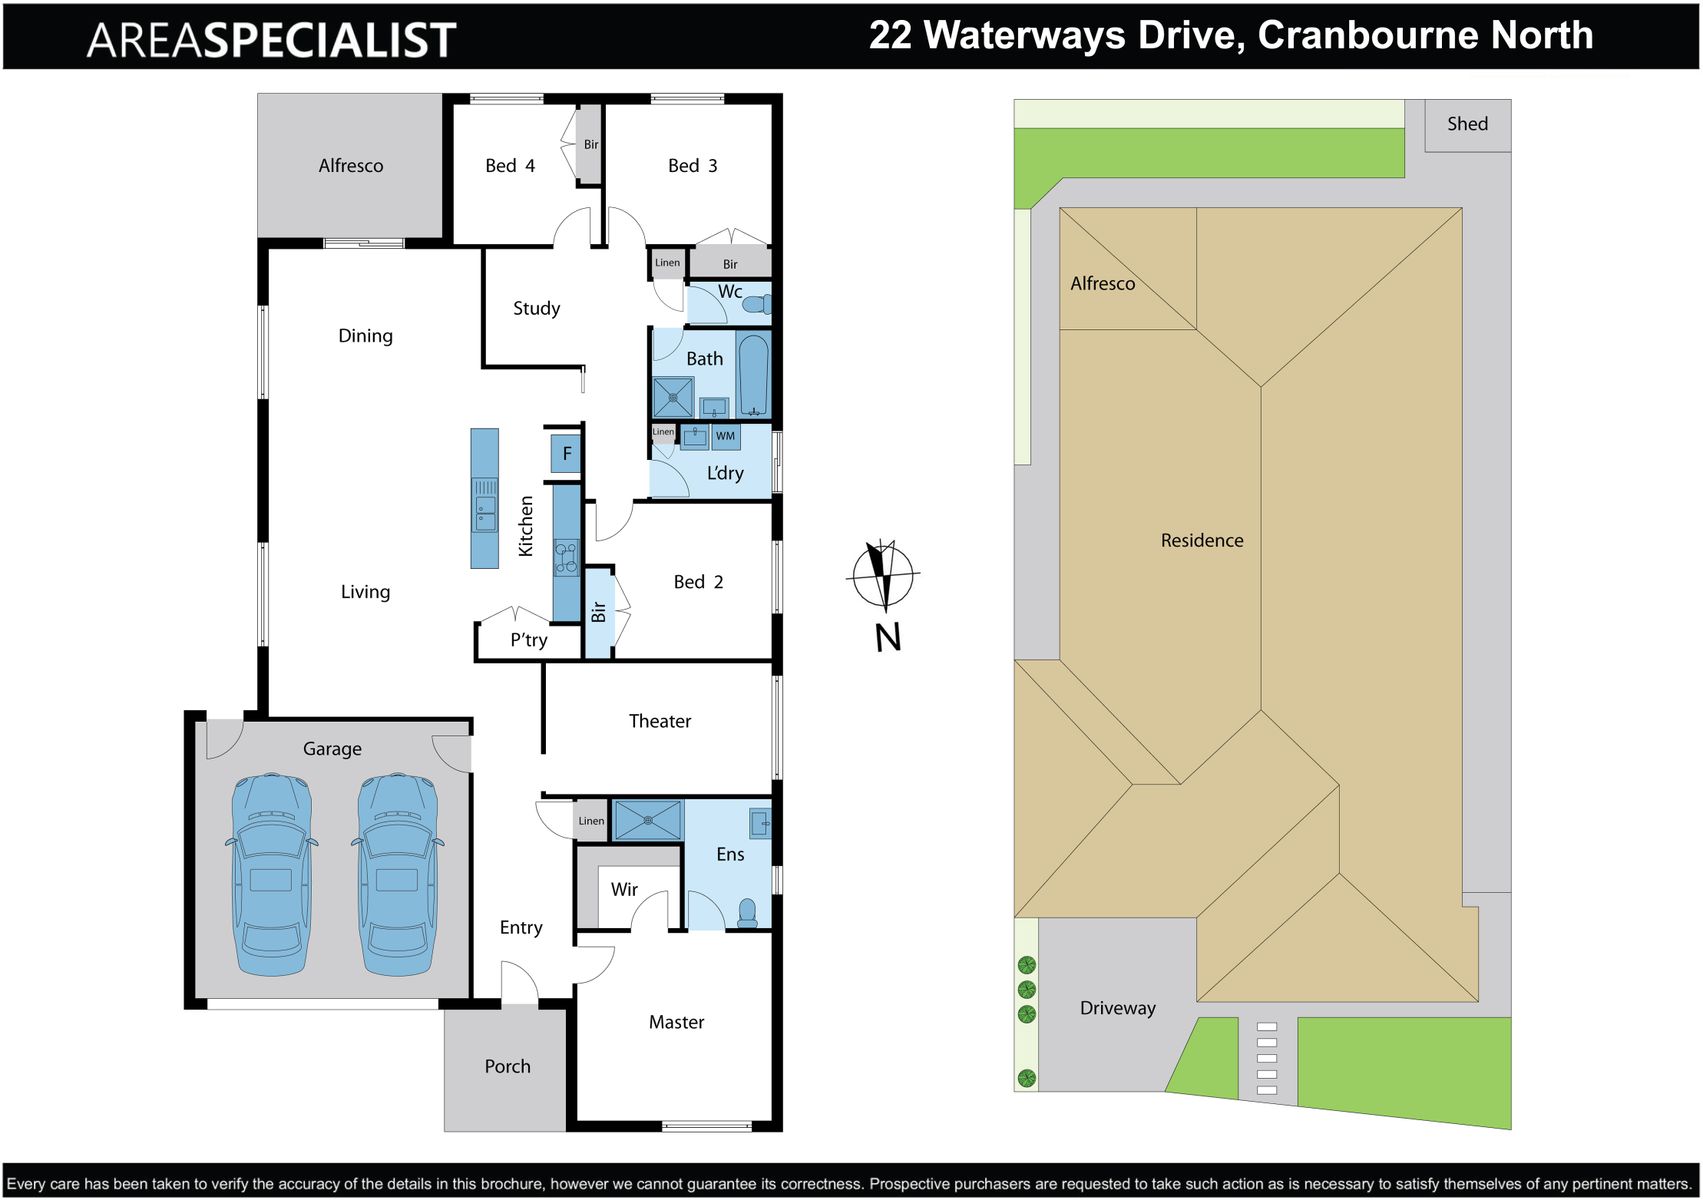 22 Waterways Drive, Cranbourne North Floor plan (watermarked)